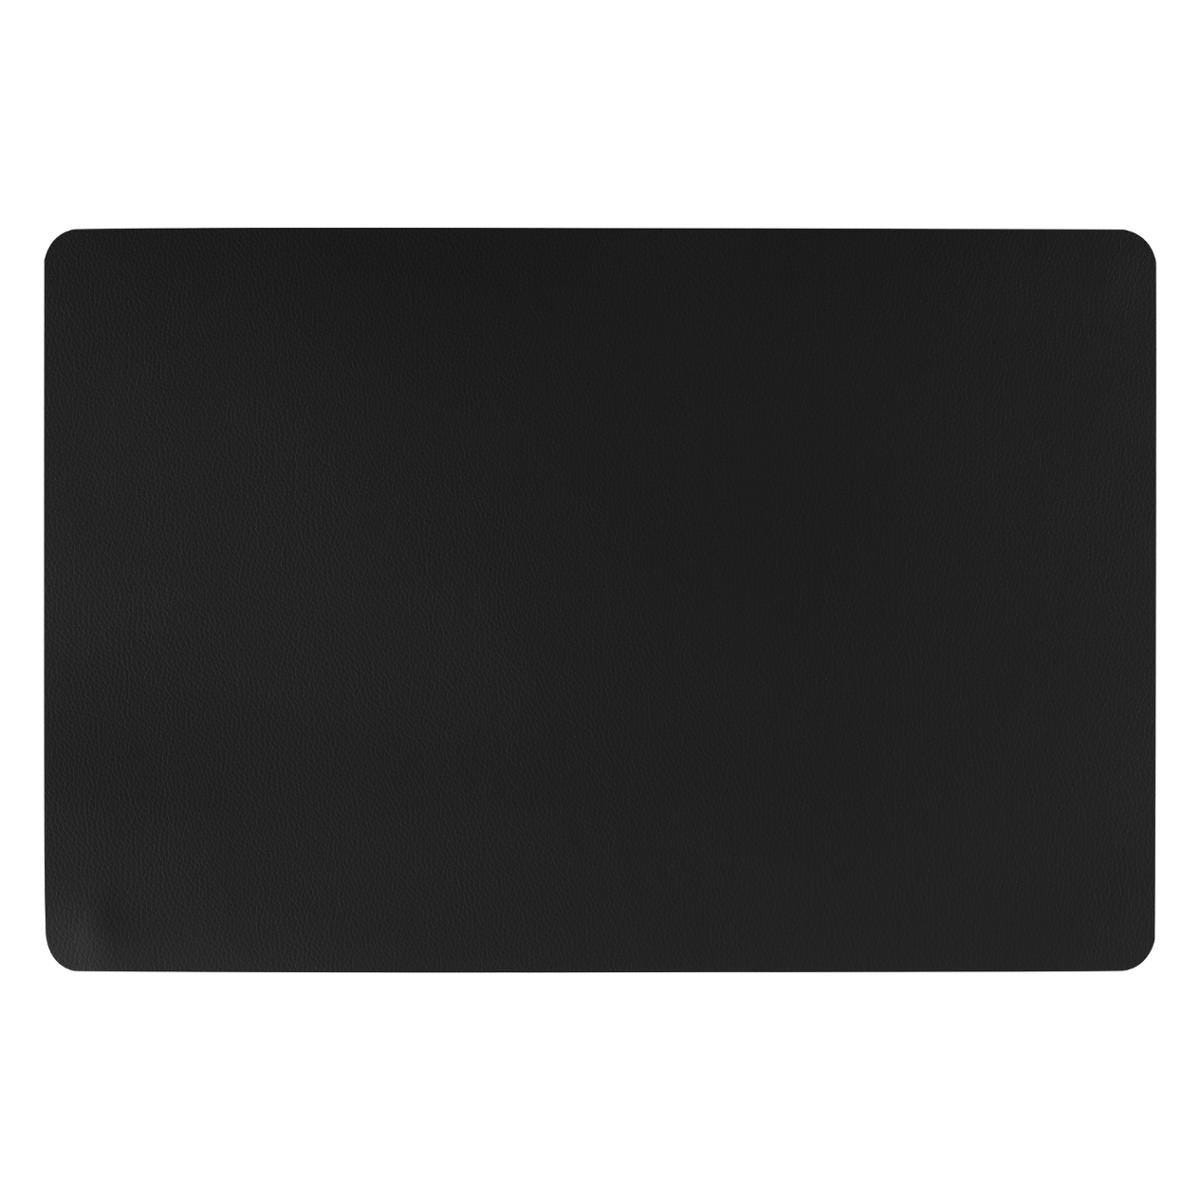 Rechthoekige placemat PU-leer- leer look zwart 45 x 30 cm